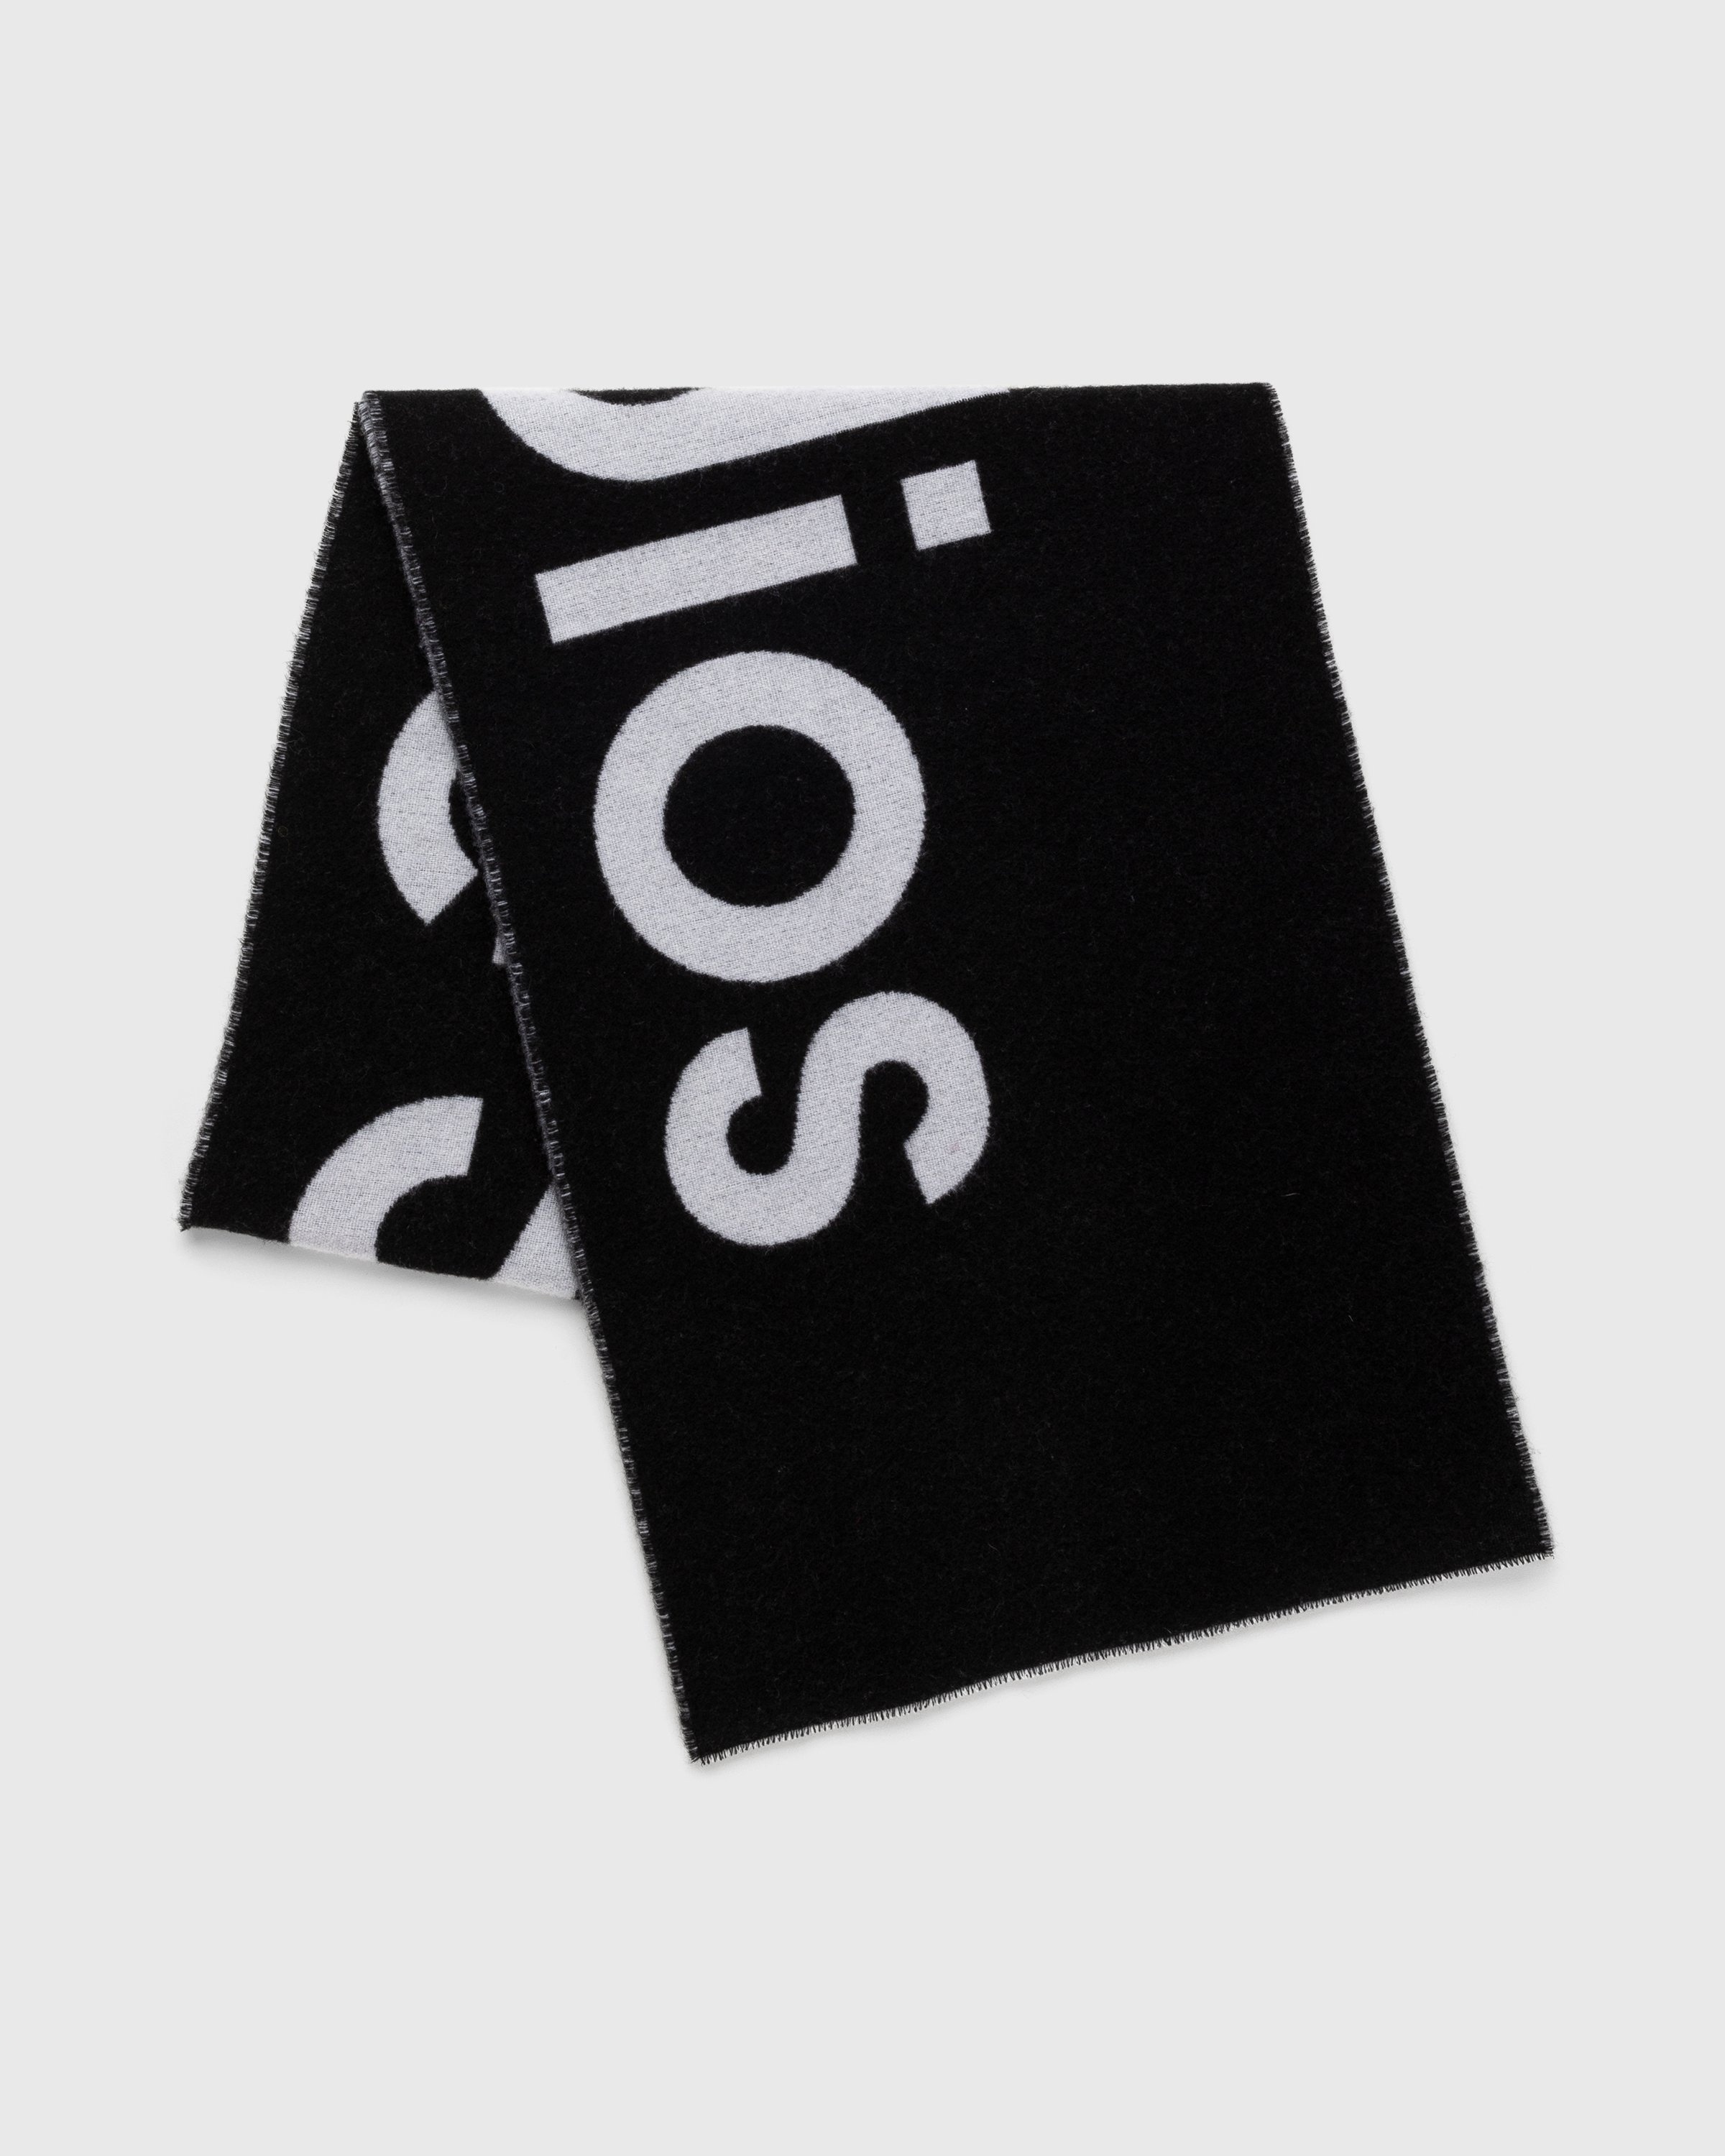 Acne Studios – Logo Jacquard Scarf Black - Scarves - Black - Image 2